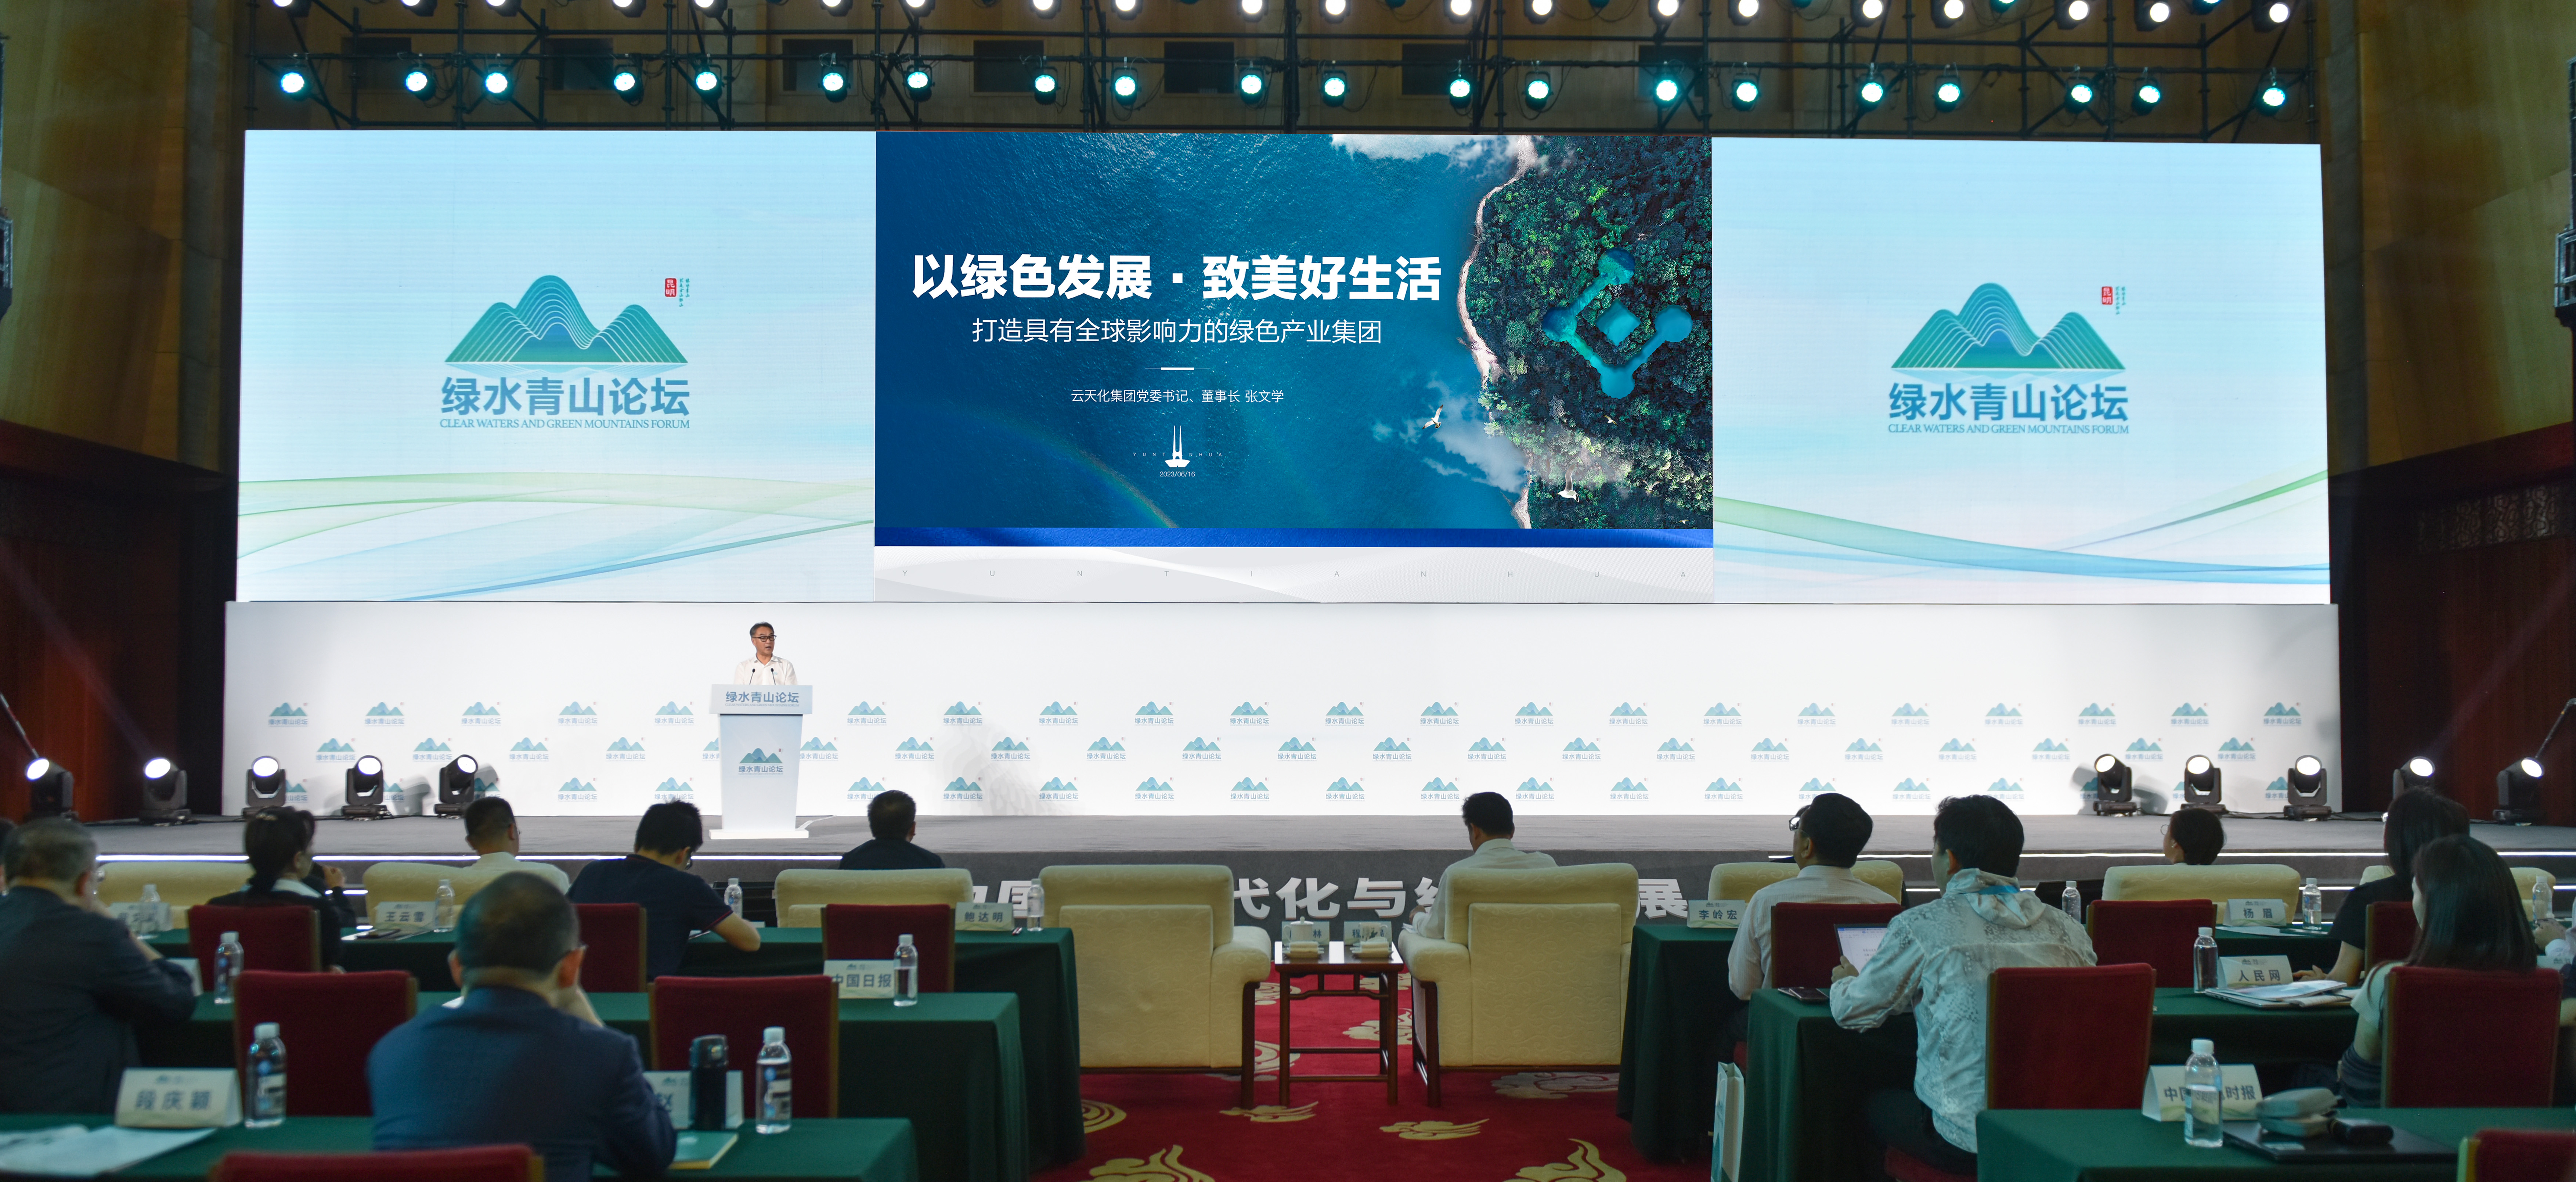 云天化集团在“绿水青山论坛·滇池大会” 作主旨演讲  为“中国式现代化与绿色发展”贡献云天化经验 